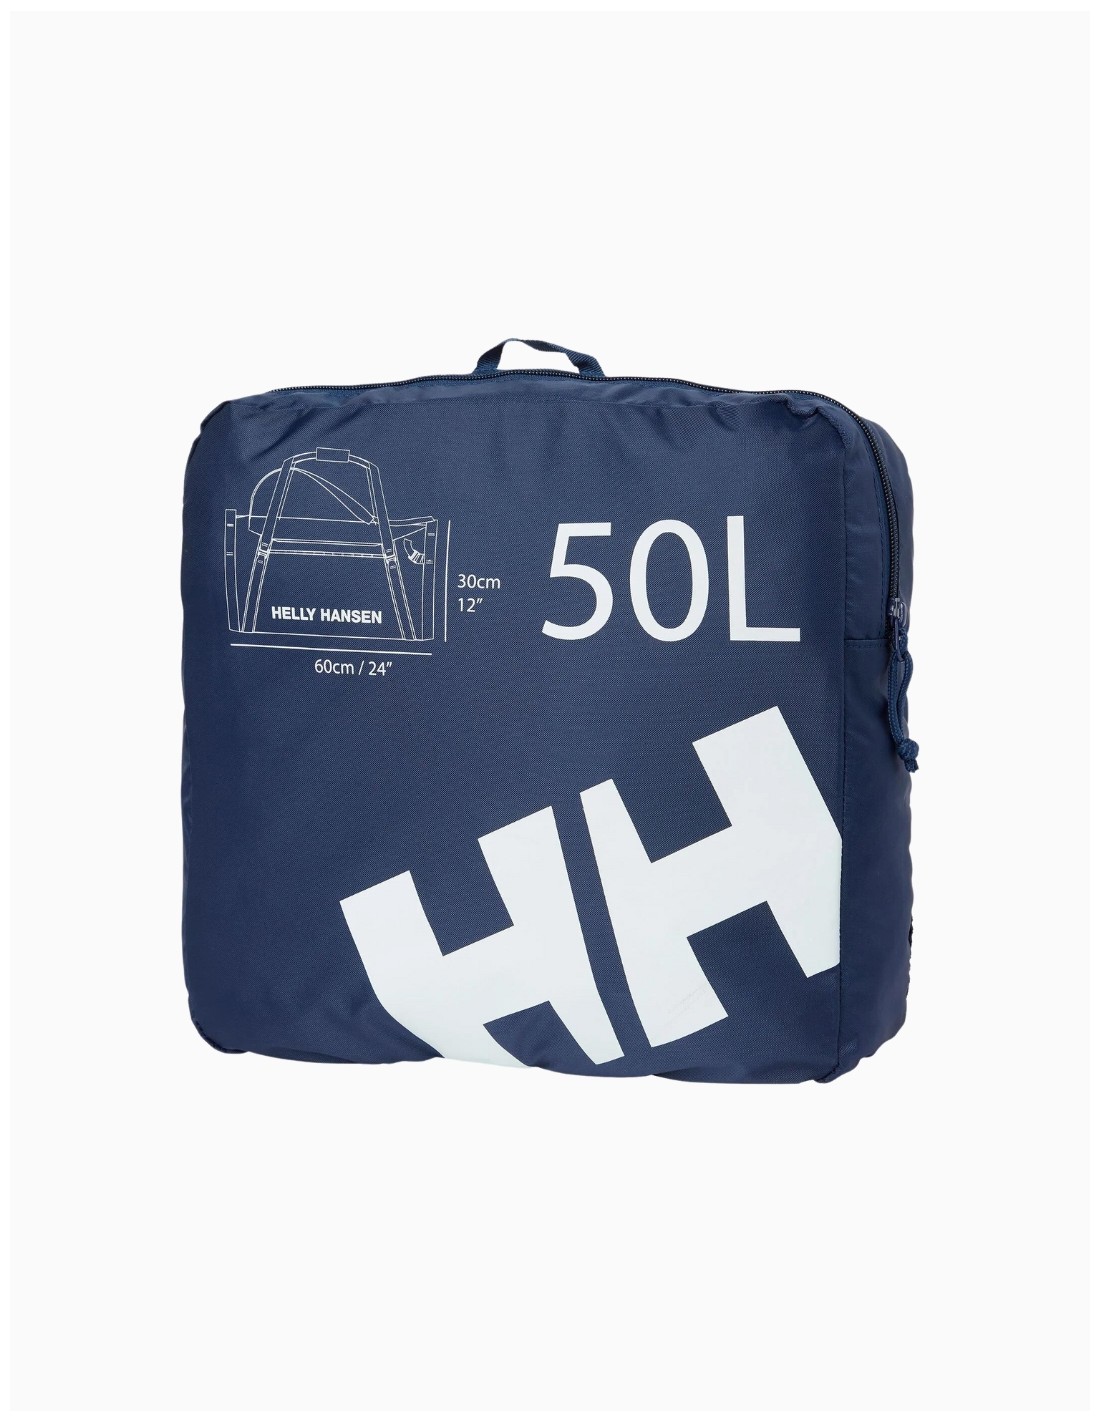 Bolsa de viaje Duffle Bag 50L